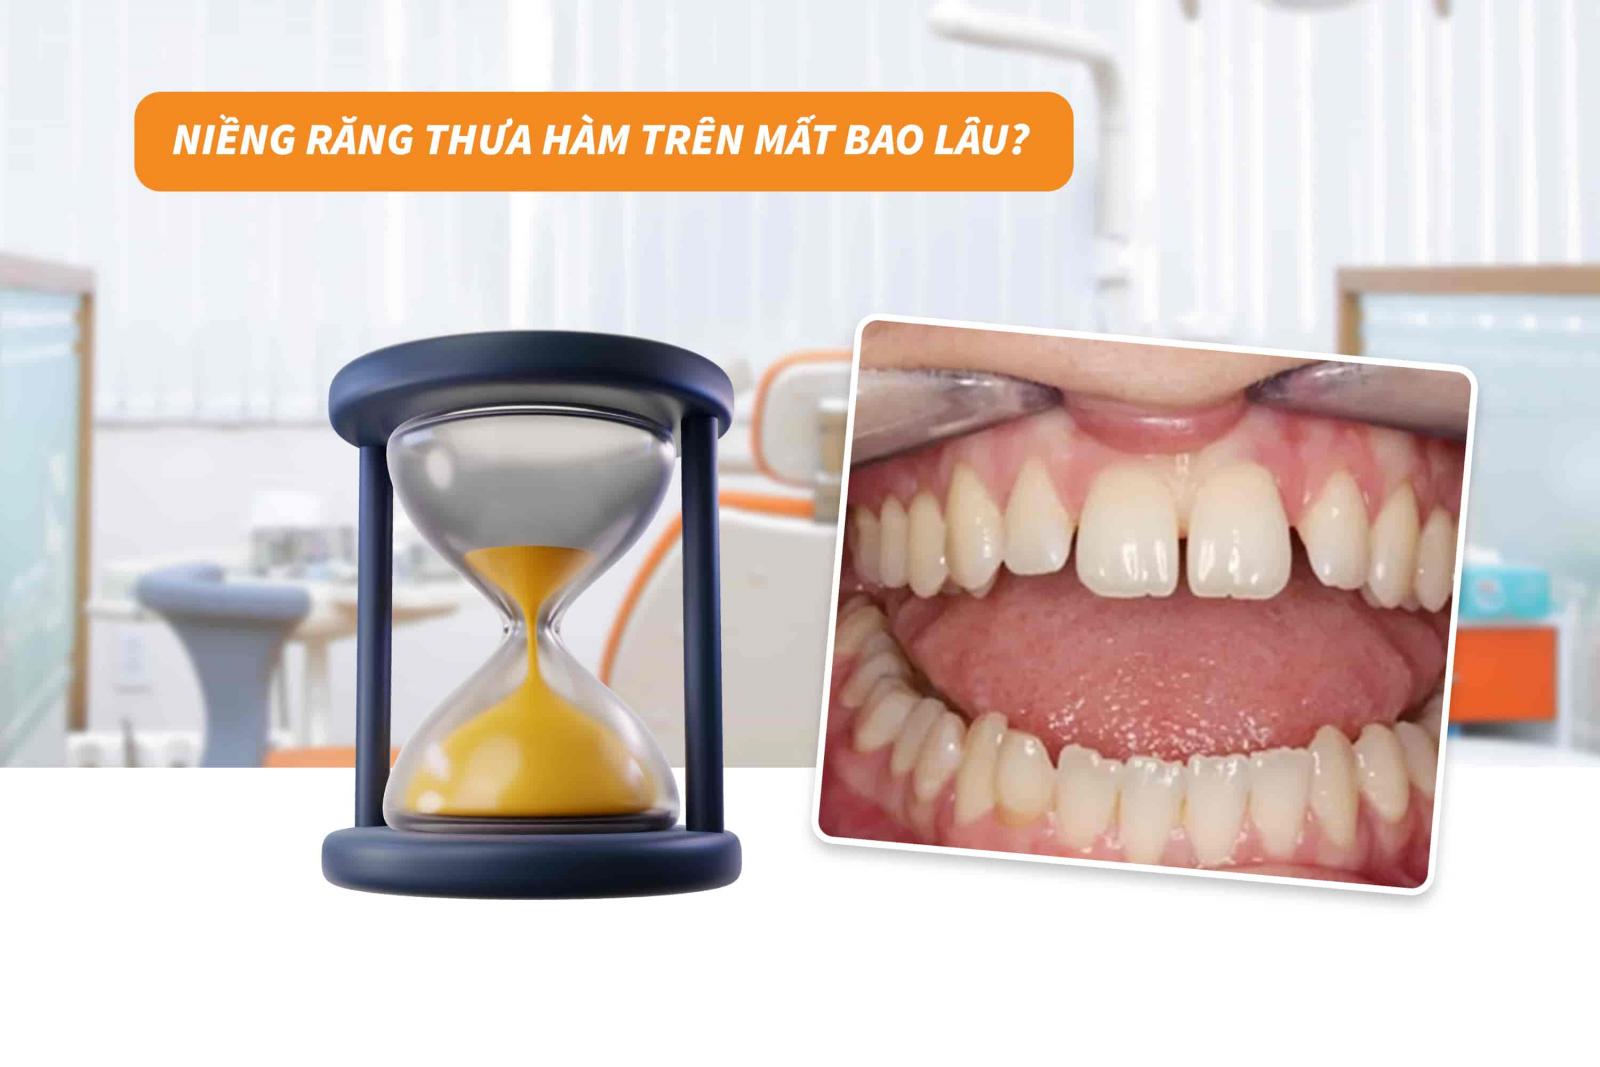 Niềng răng thưa một hàm mất bao lâu?